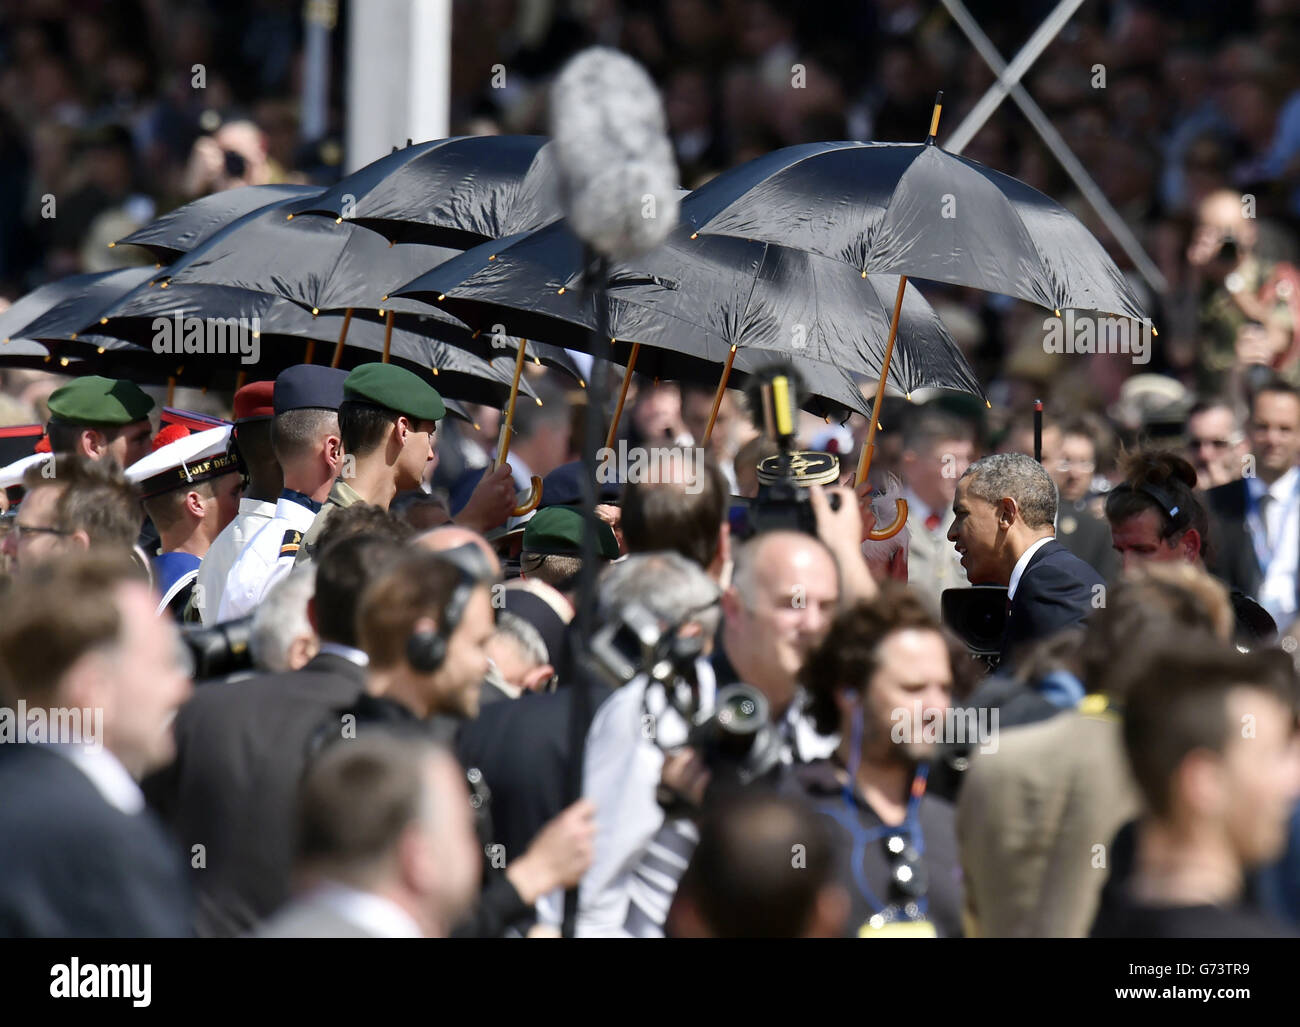 LE président AMÉRICAIN Barak Obama rencontre des anciens combattants, protégés par des parasols du soleil, tandis que lui et d'autres chefs d'État participent à l'événement commémoratif international organisé par le président français François Hollande pour commémorer le 70e anniversaire des Landes de Sword Beach. Banque D'Images